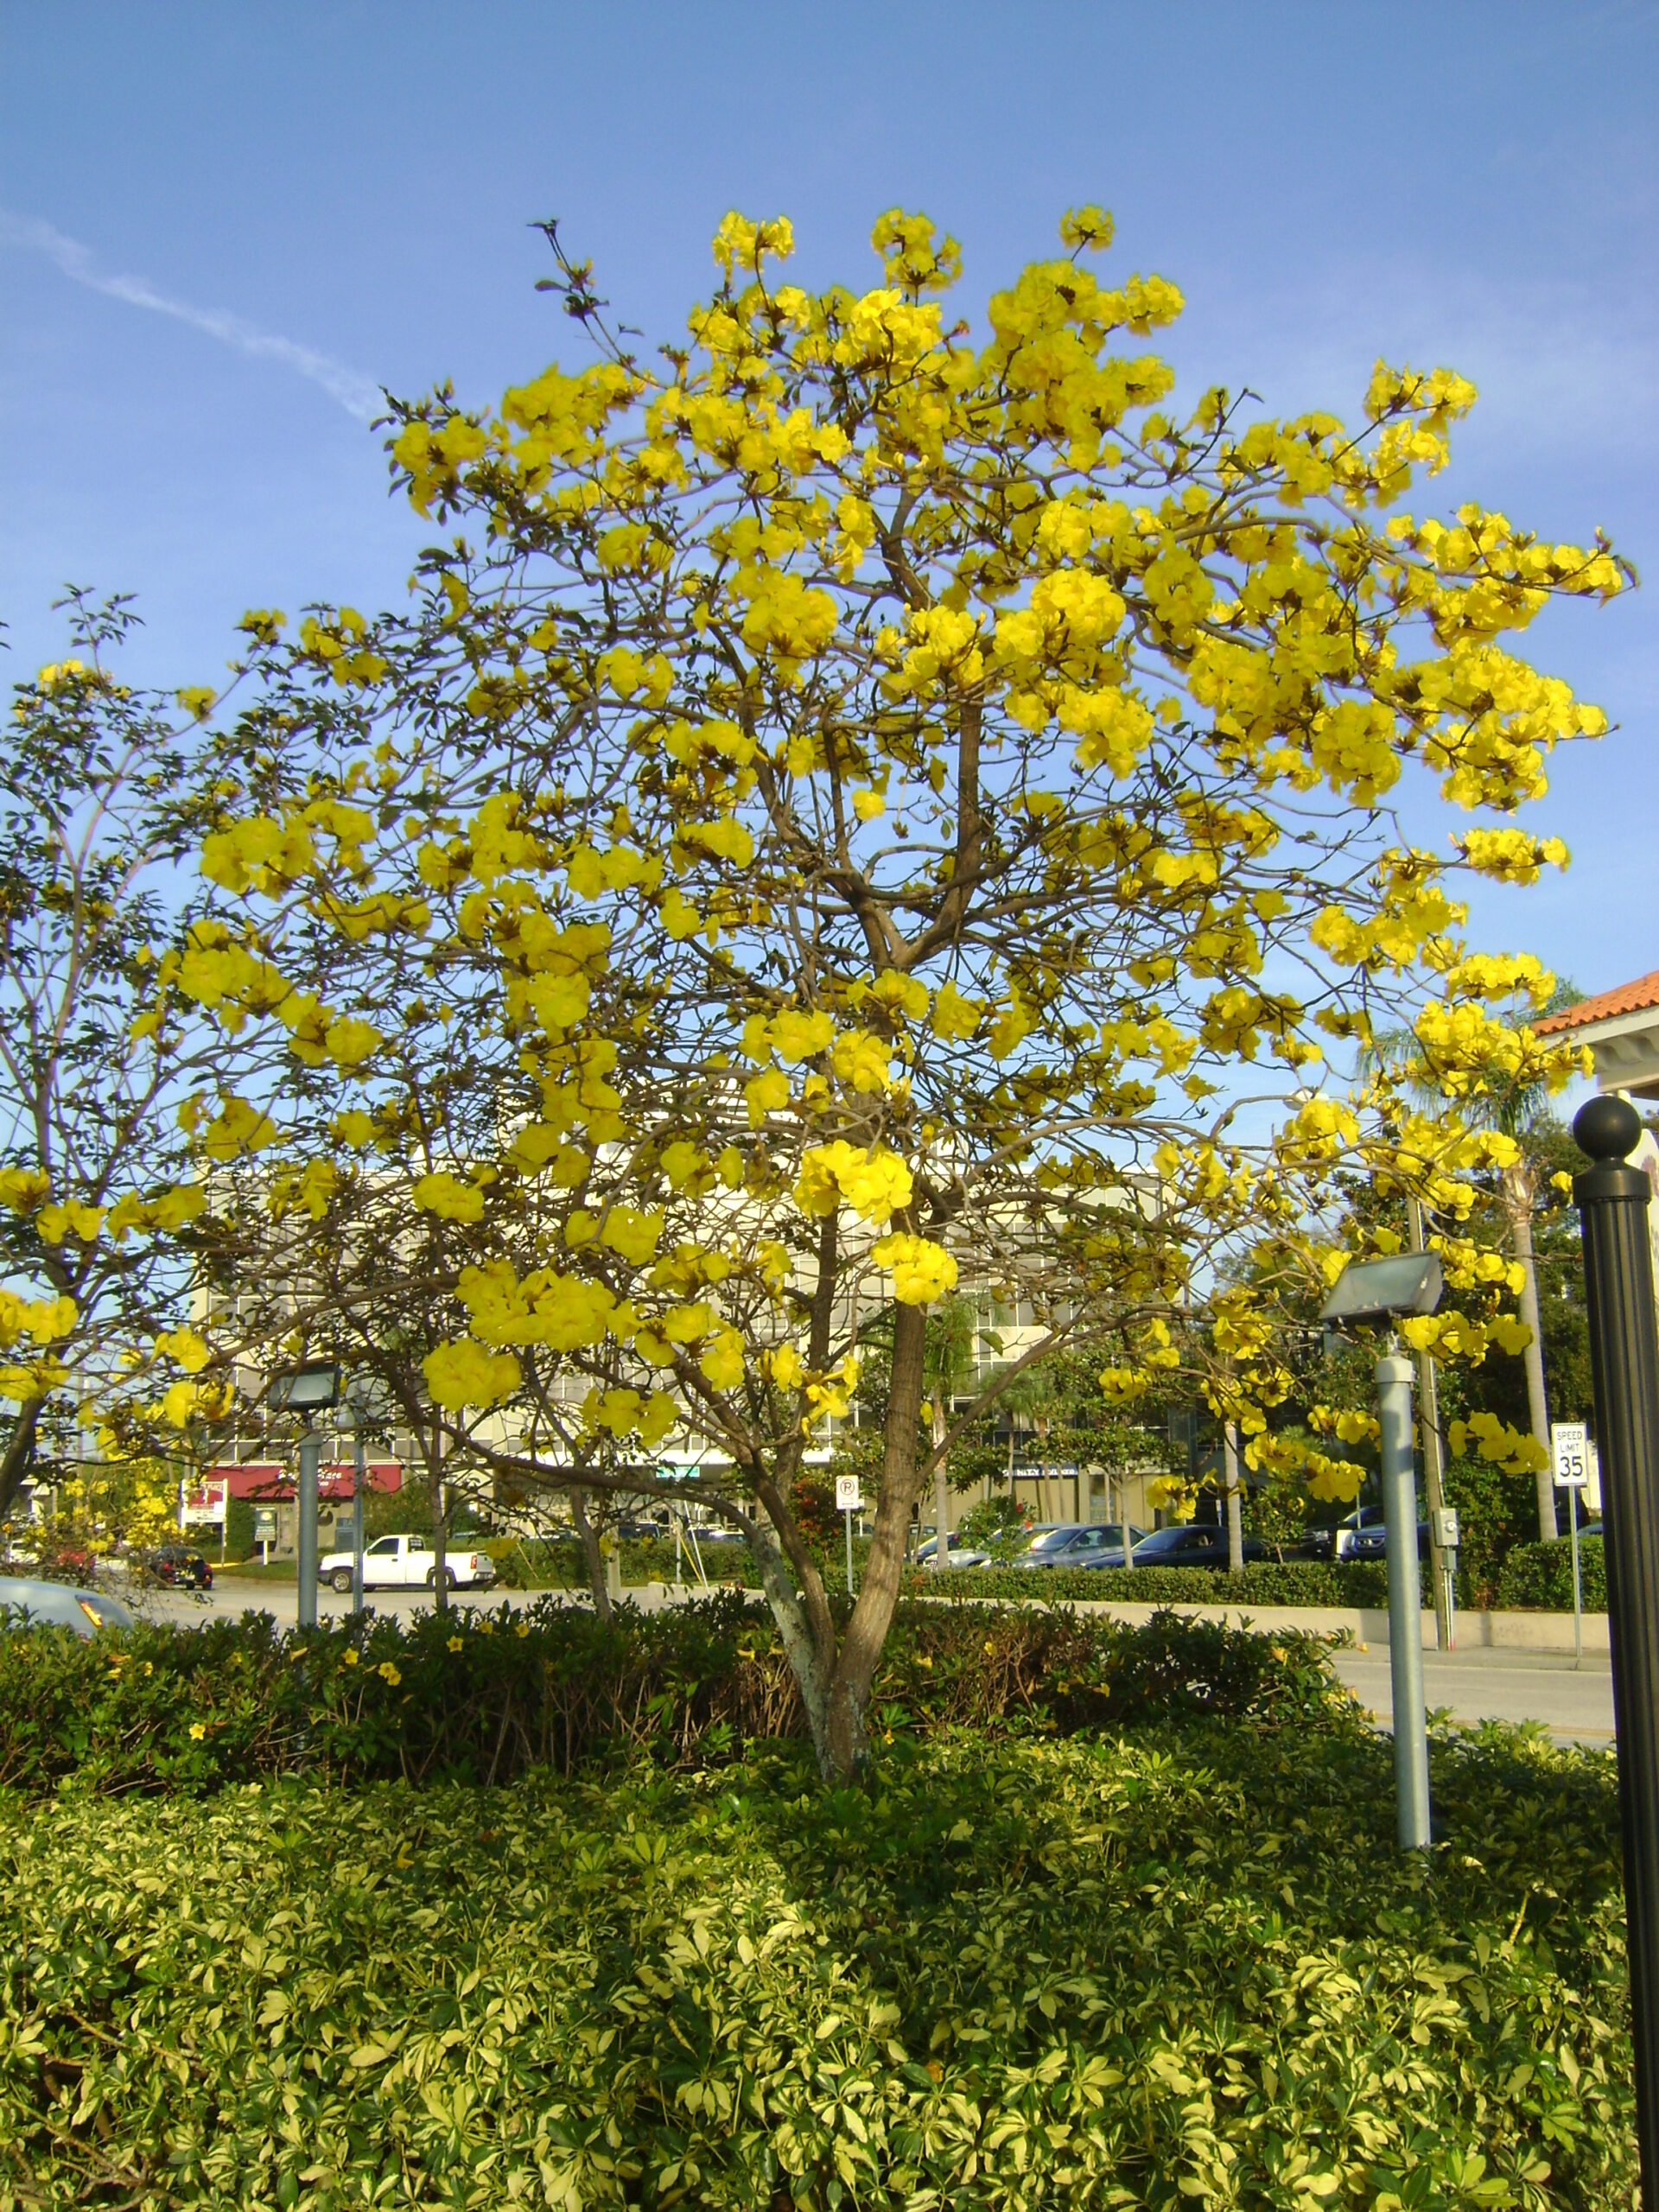 Yellow Tabebuia